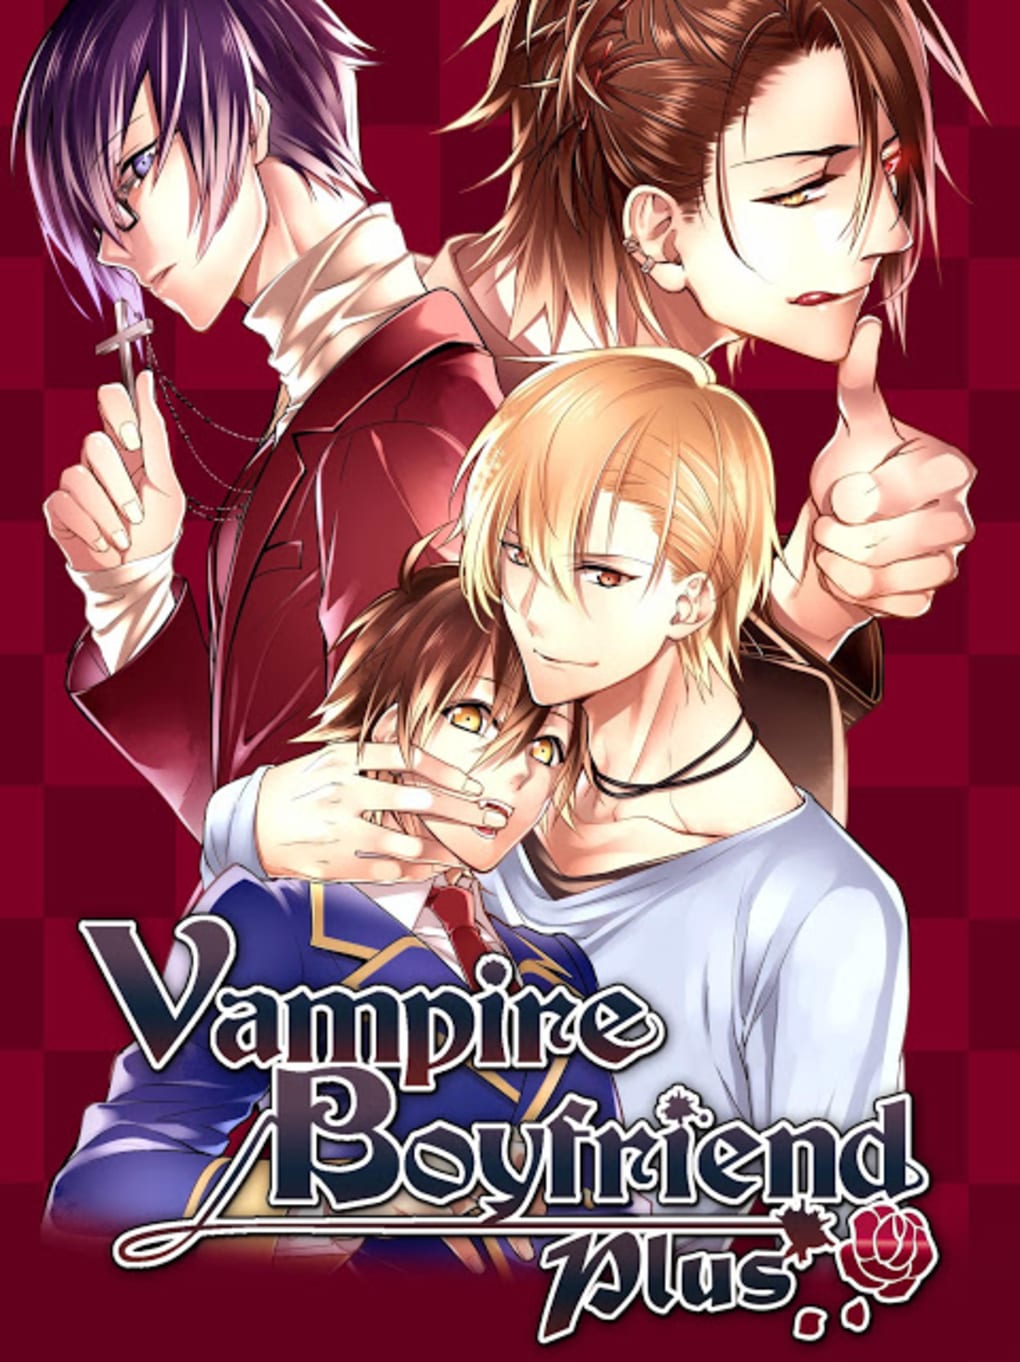 História de Vampiro:Jogo Anime APK (Android Game) - Baixar Grátis